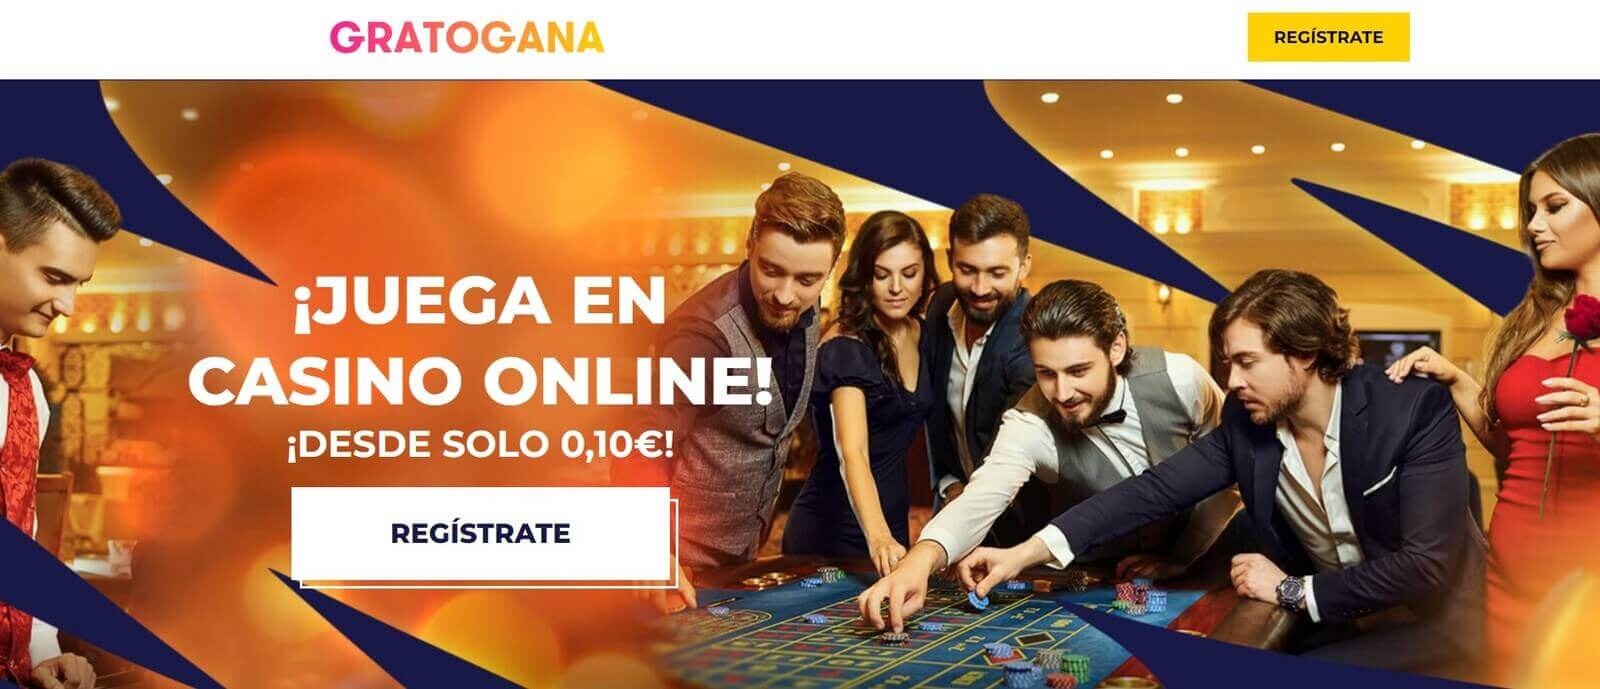 Reseña de Gratogana Casino en España de 2022